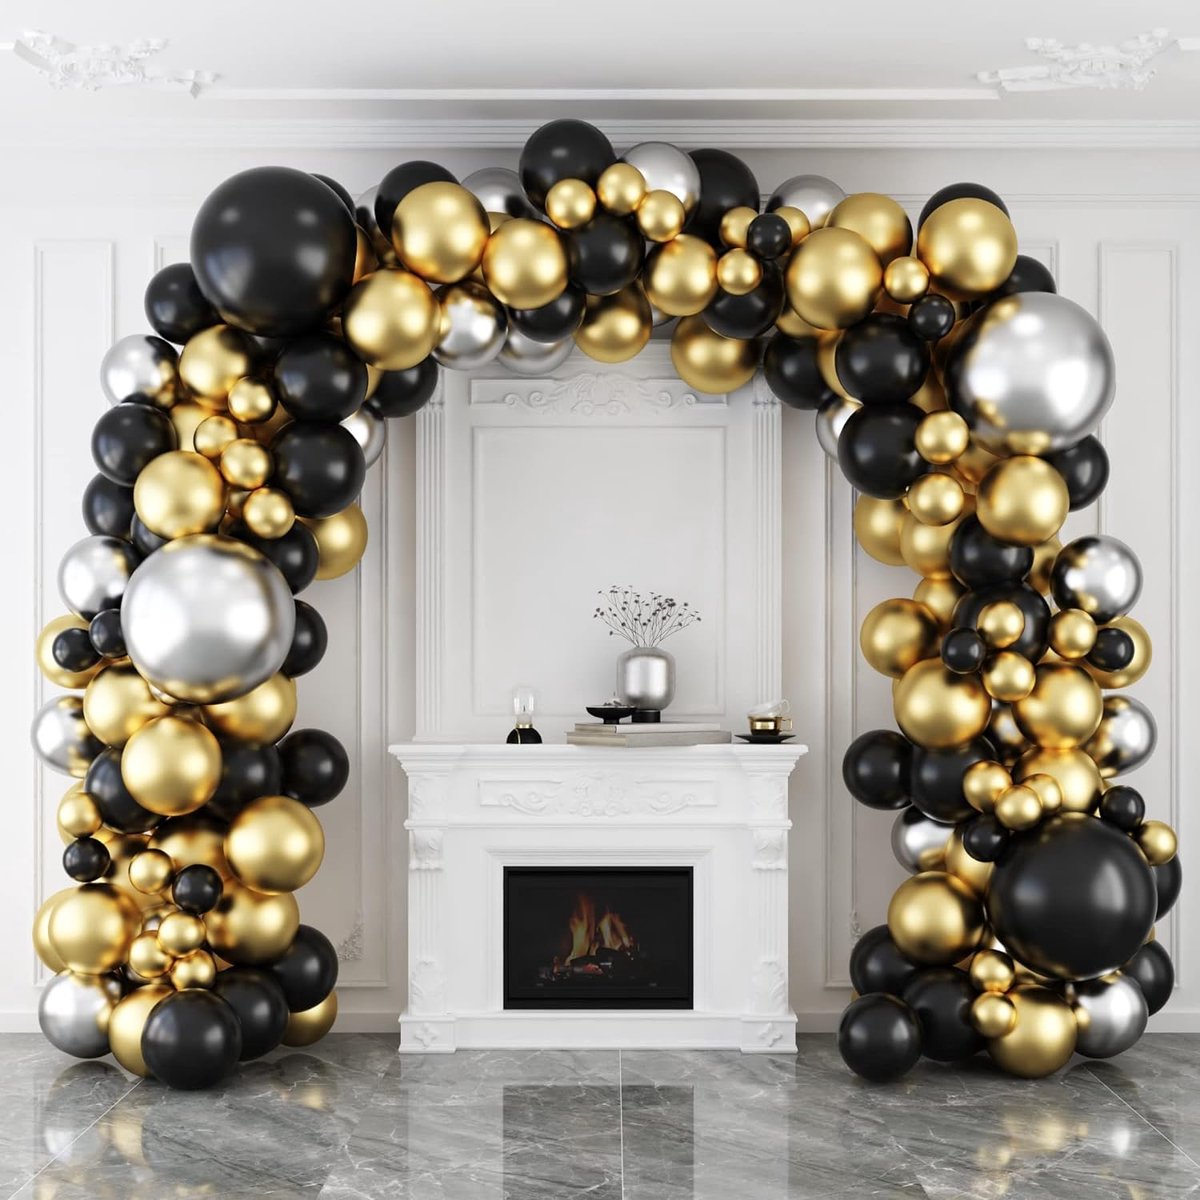 6 Ballons du Nouvel An noir et doré or en latex de 30 cm avec